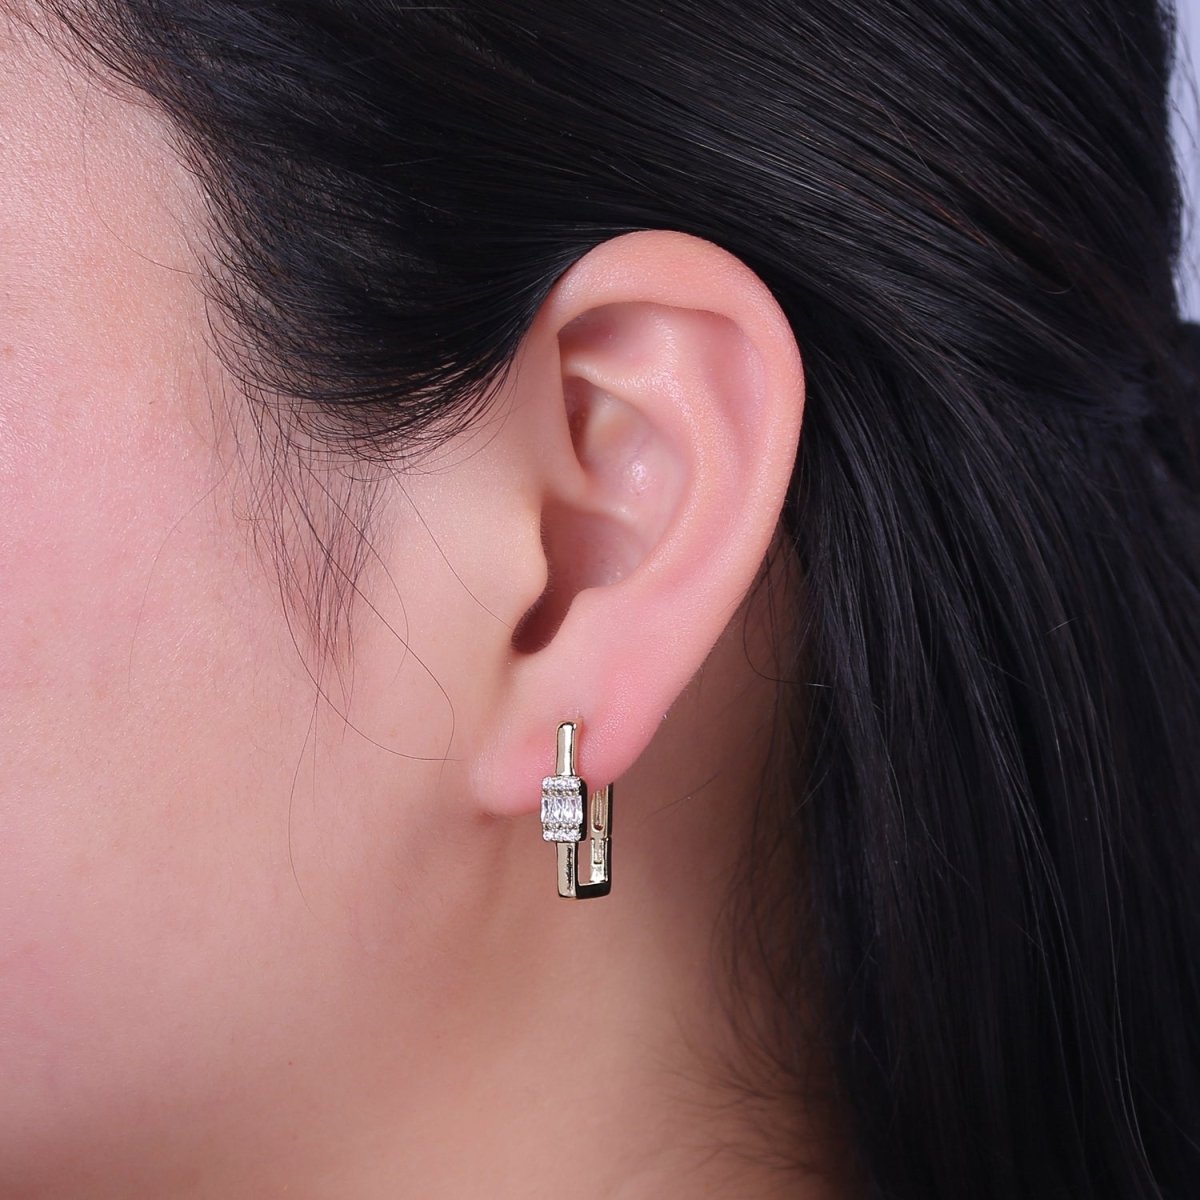 Dainty Oblong Rectangle Diamond cz Hoop Earring, Gold U Shape Hoop Earring V-149 - DLUXCA